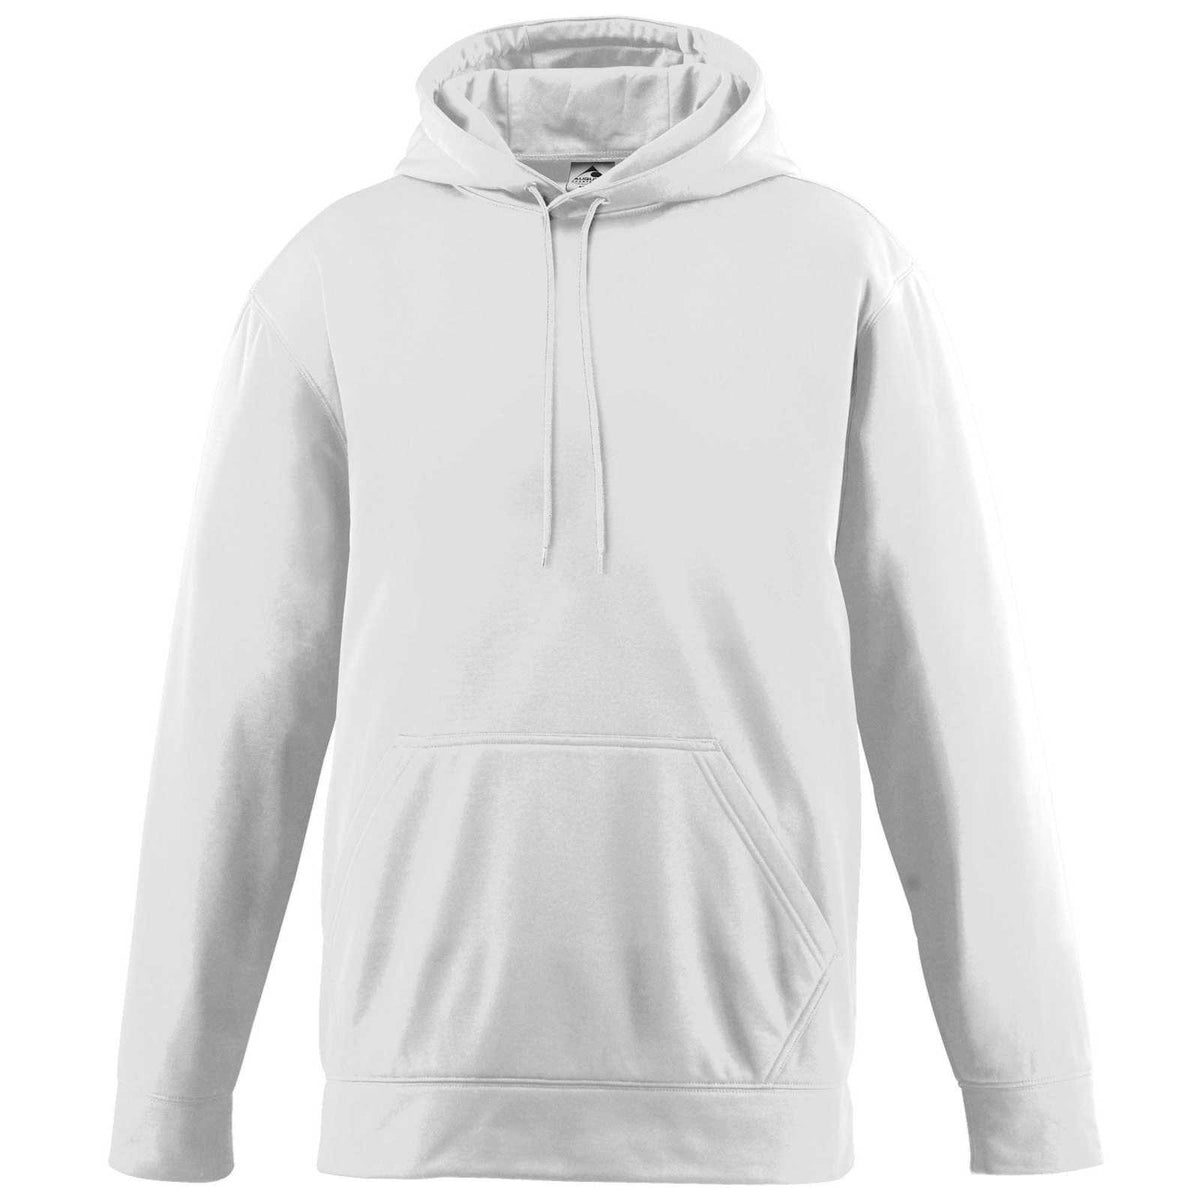 Augusta 5505 Wicking Fleece Hooded Sweatshirt - White - HIT a Double